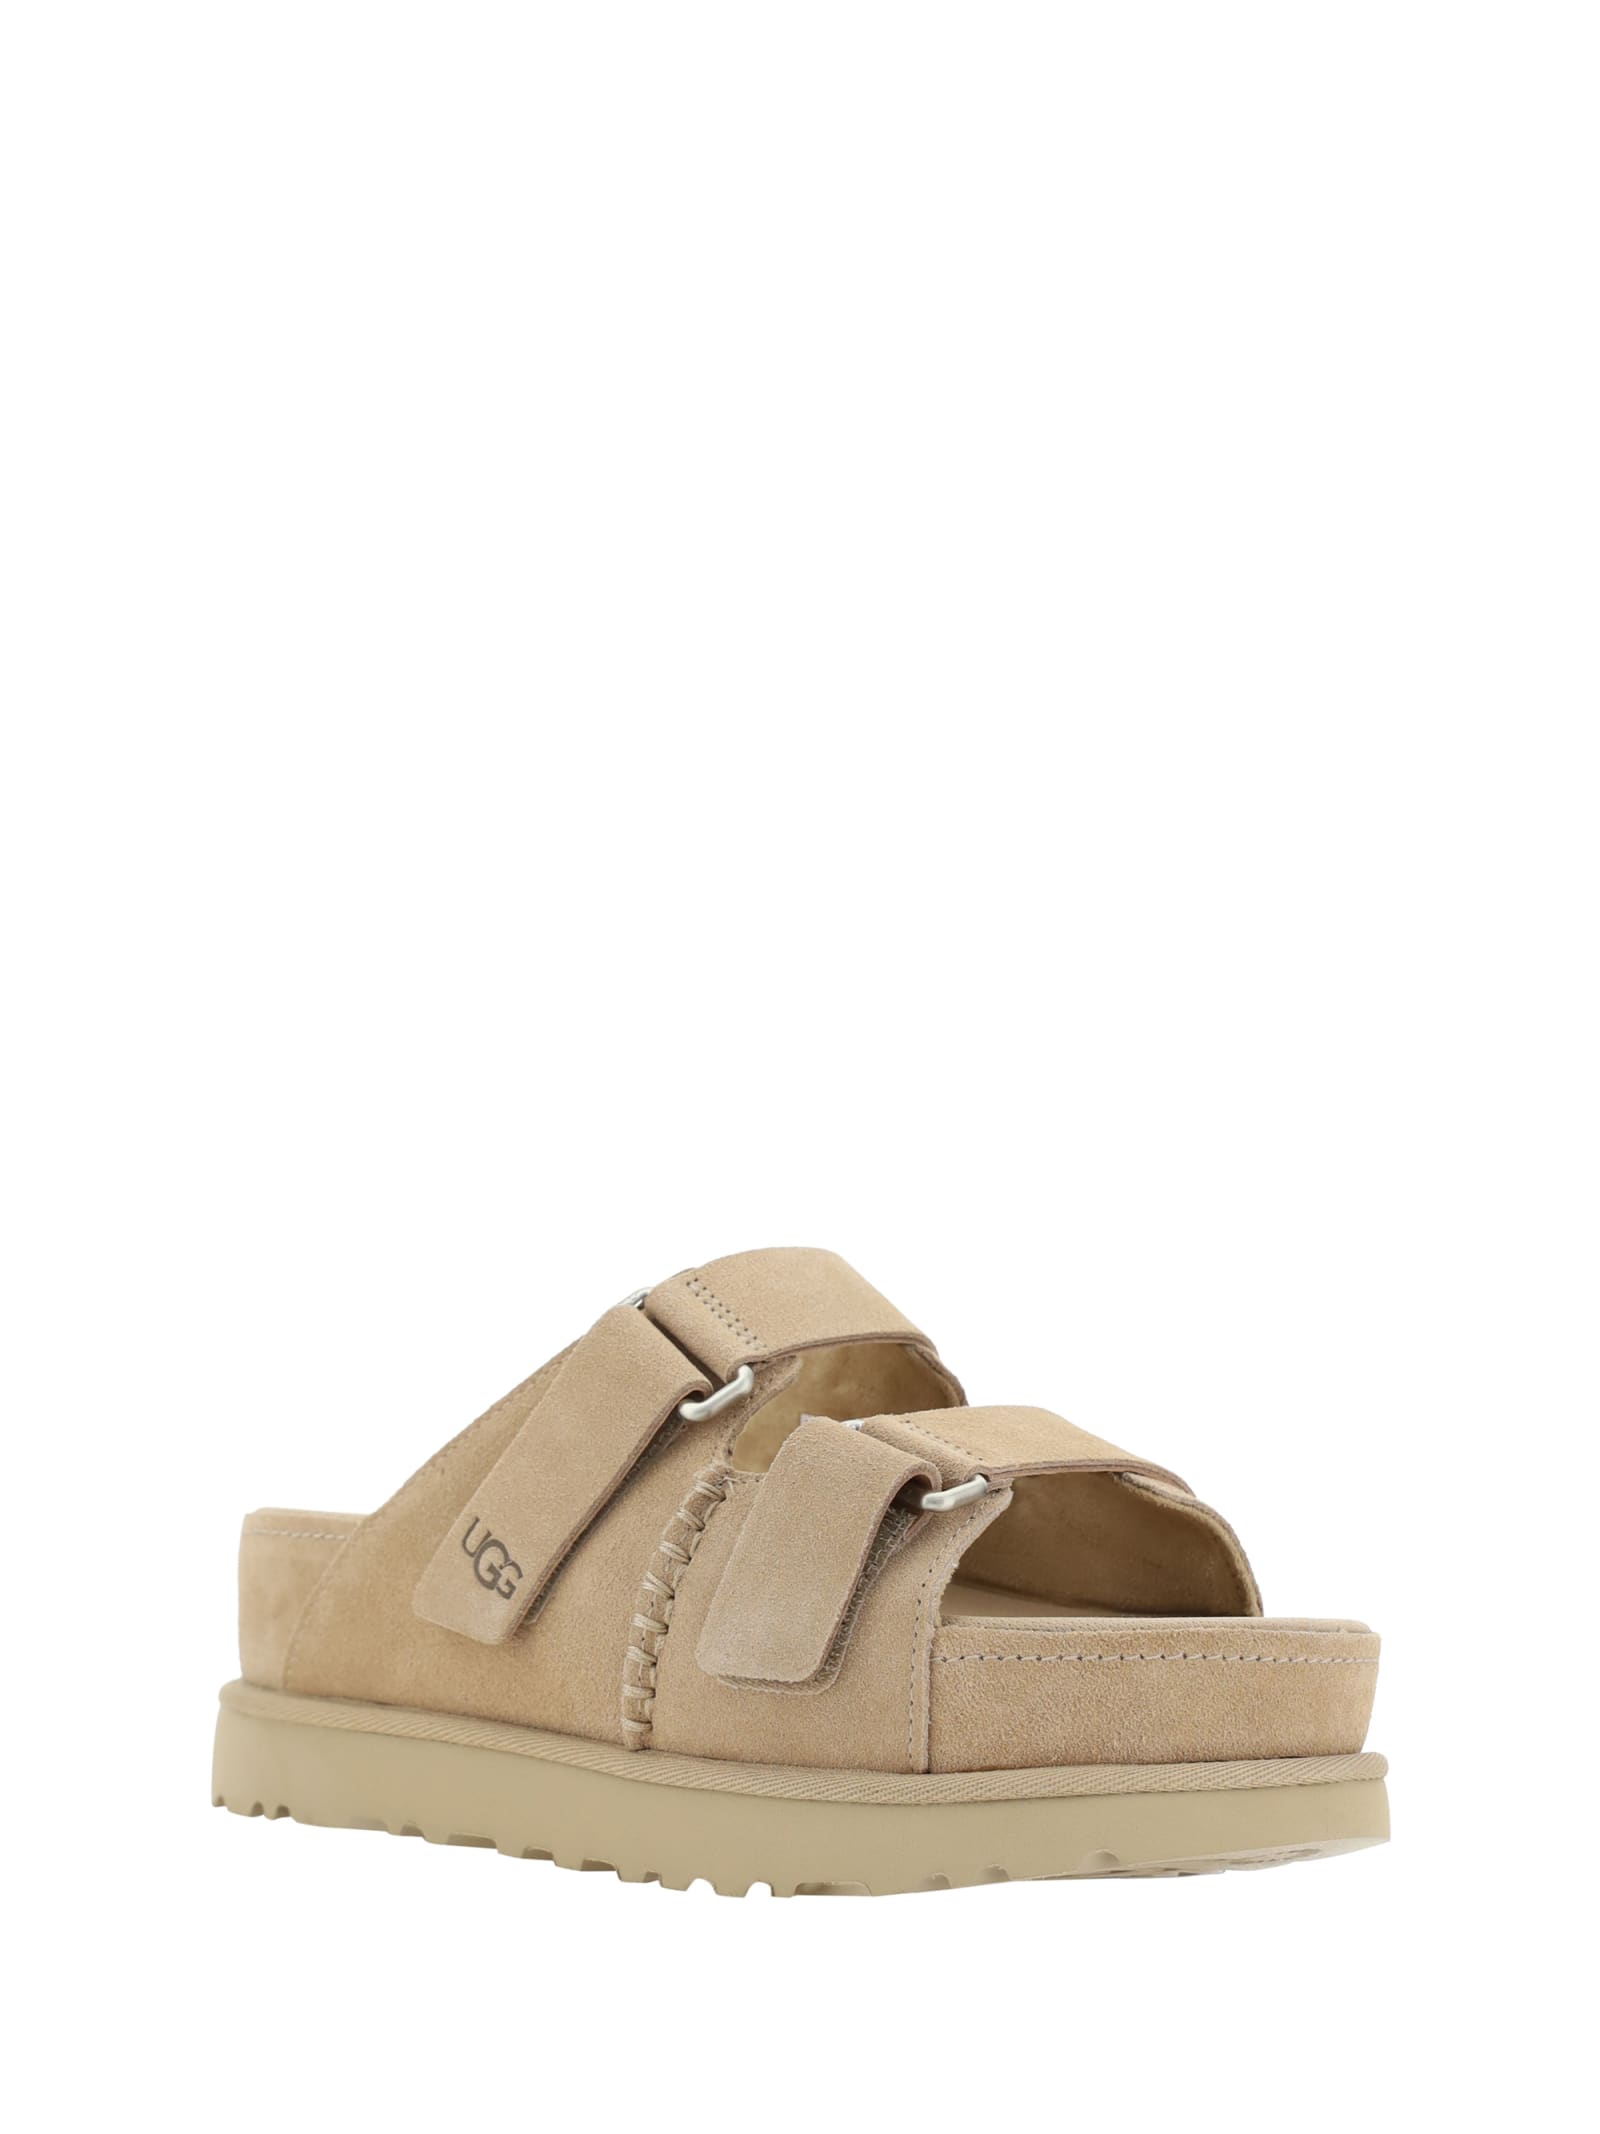 Shop Ugg Goldenstar Hi Slide Sandals